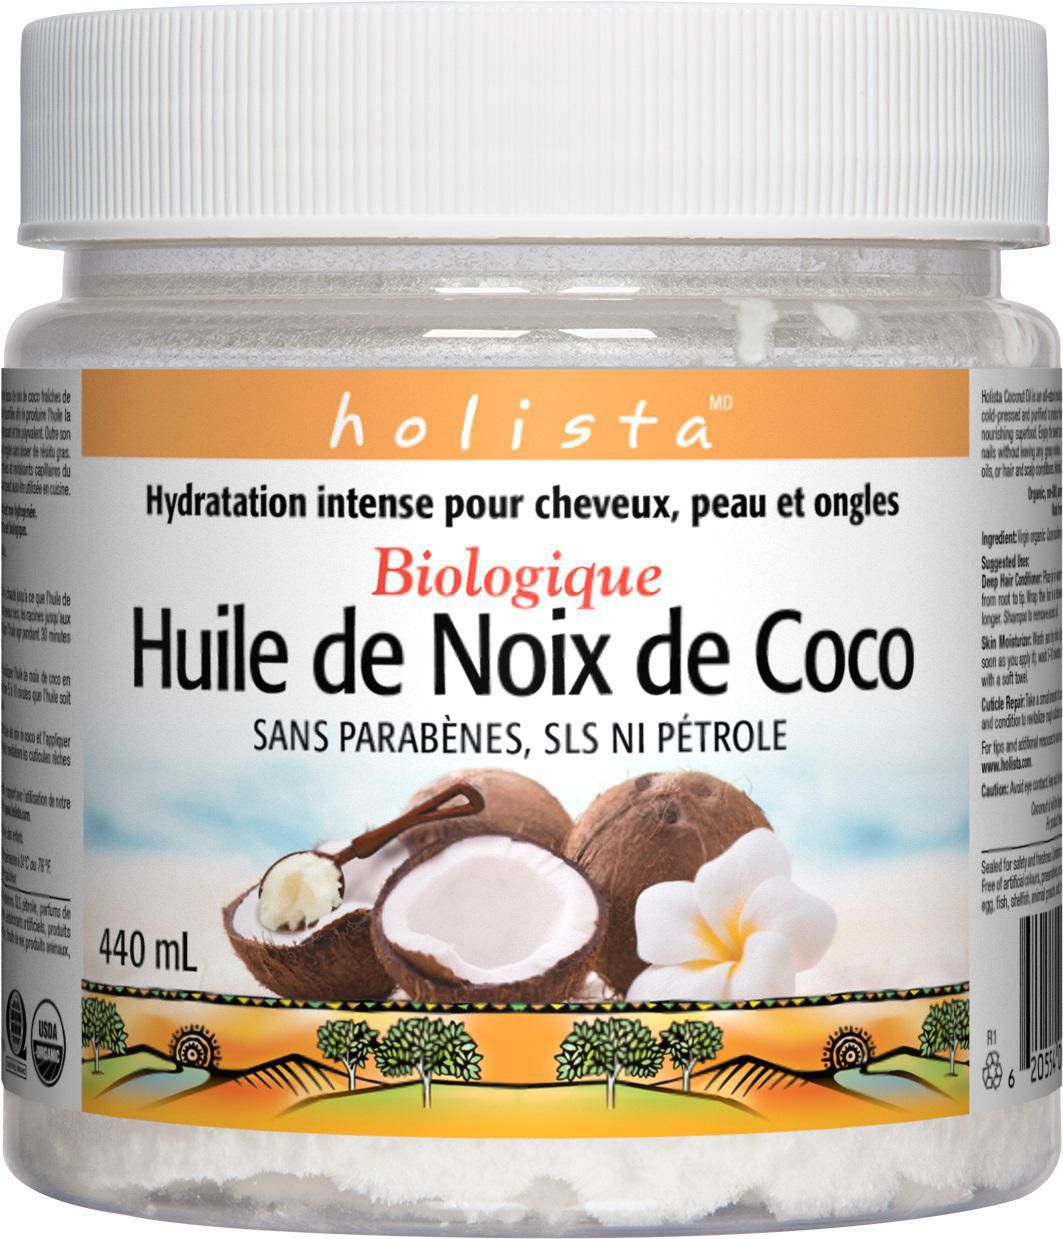 Acheter PHATOIL Huiles essentielles de fruits de noix de coco pour